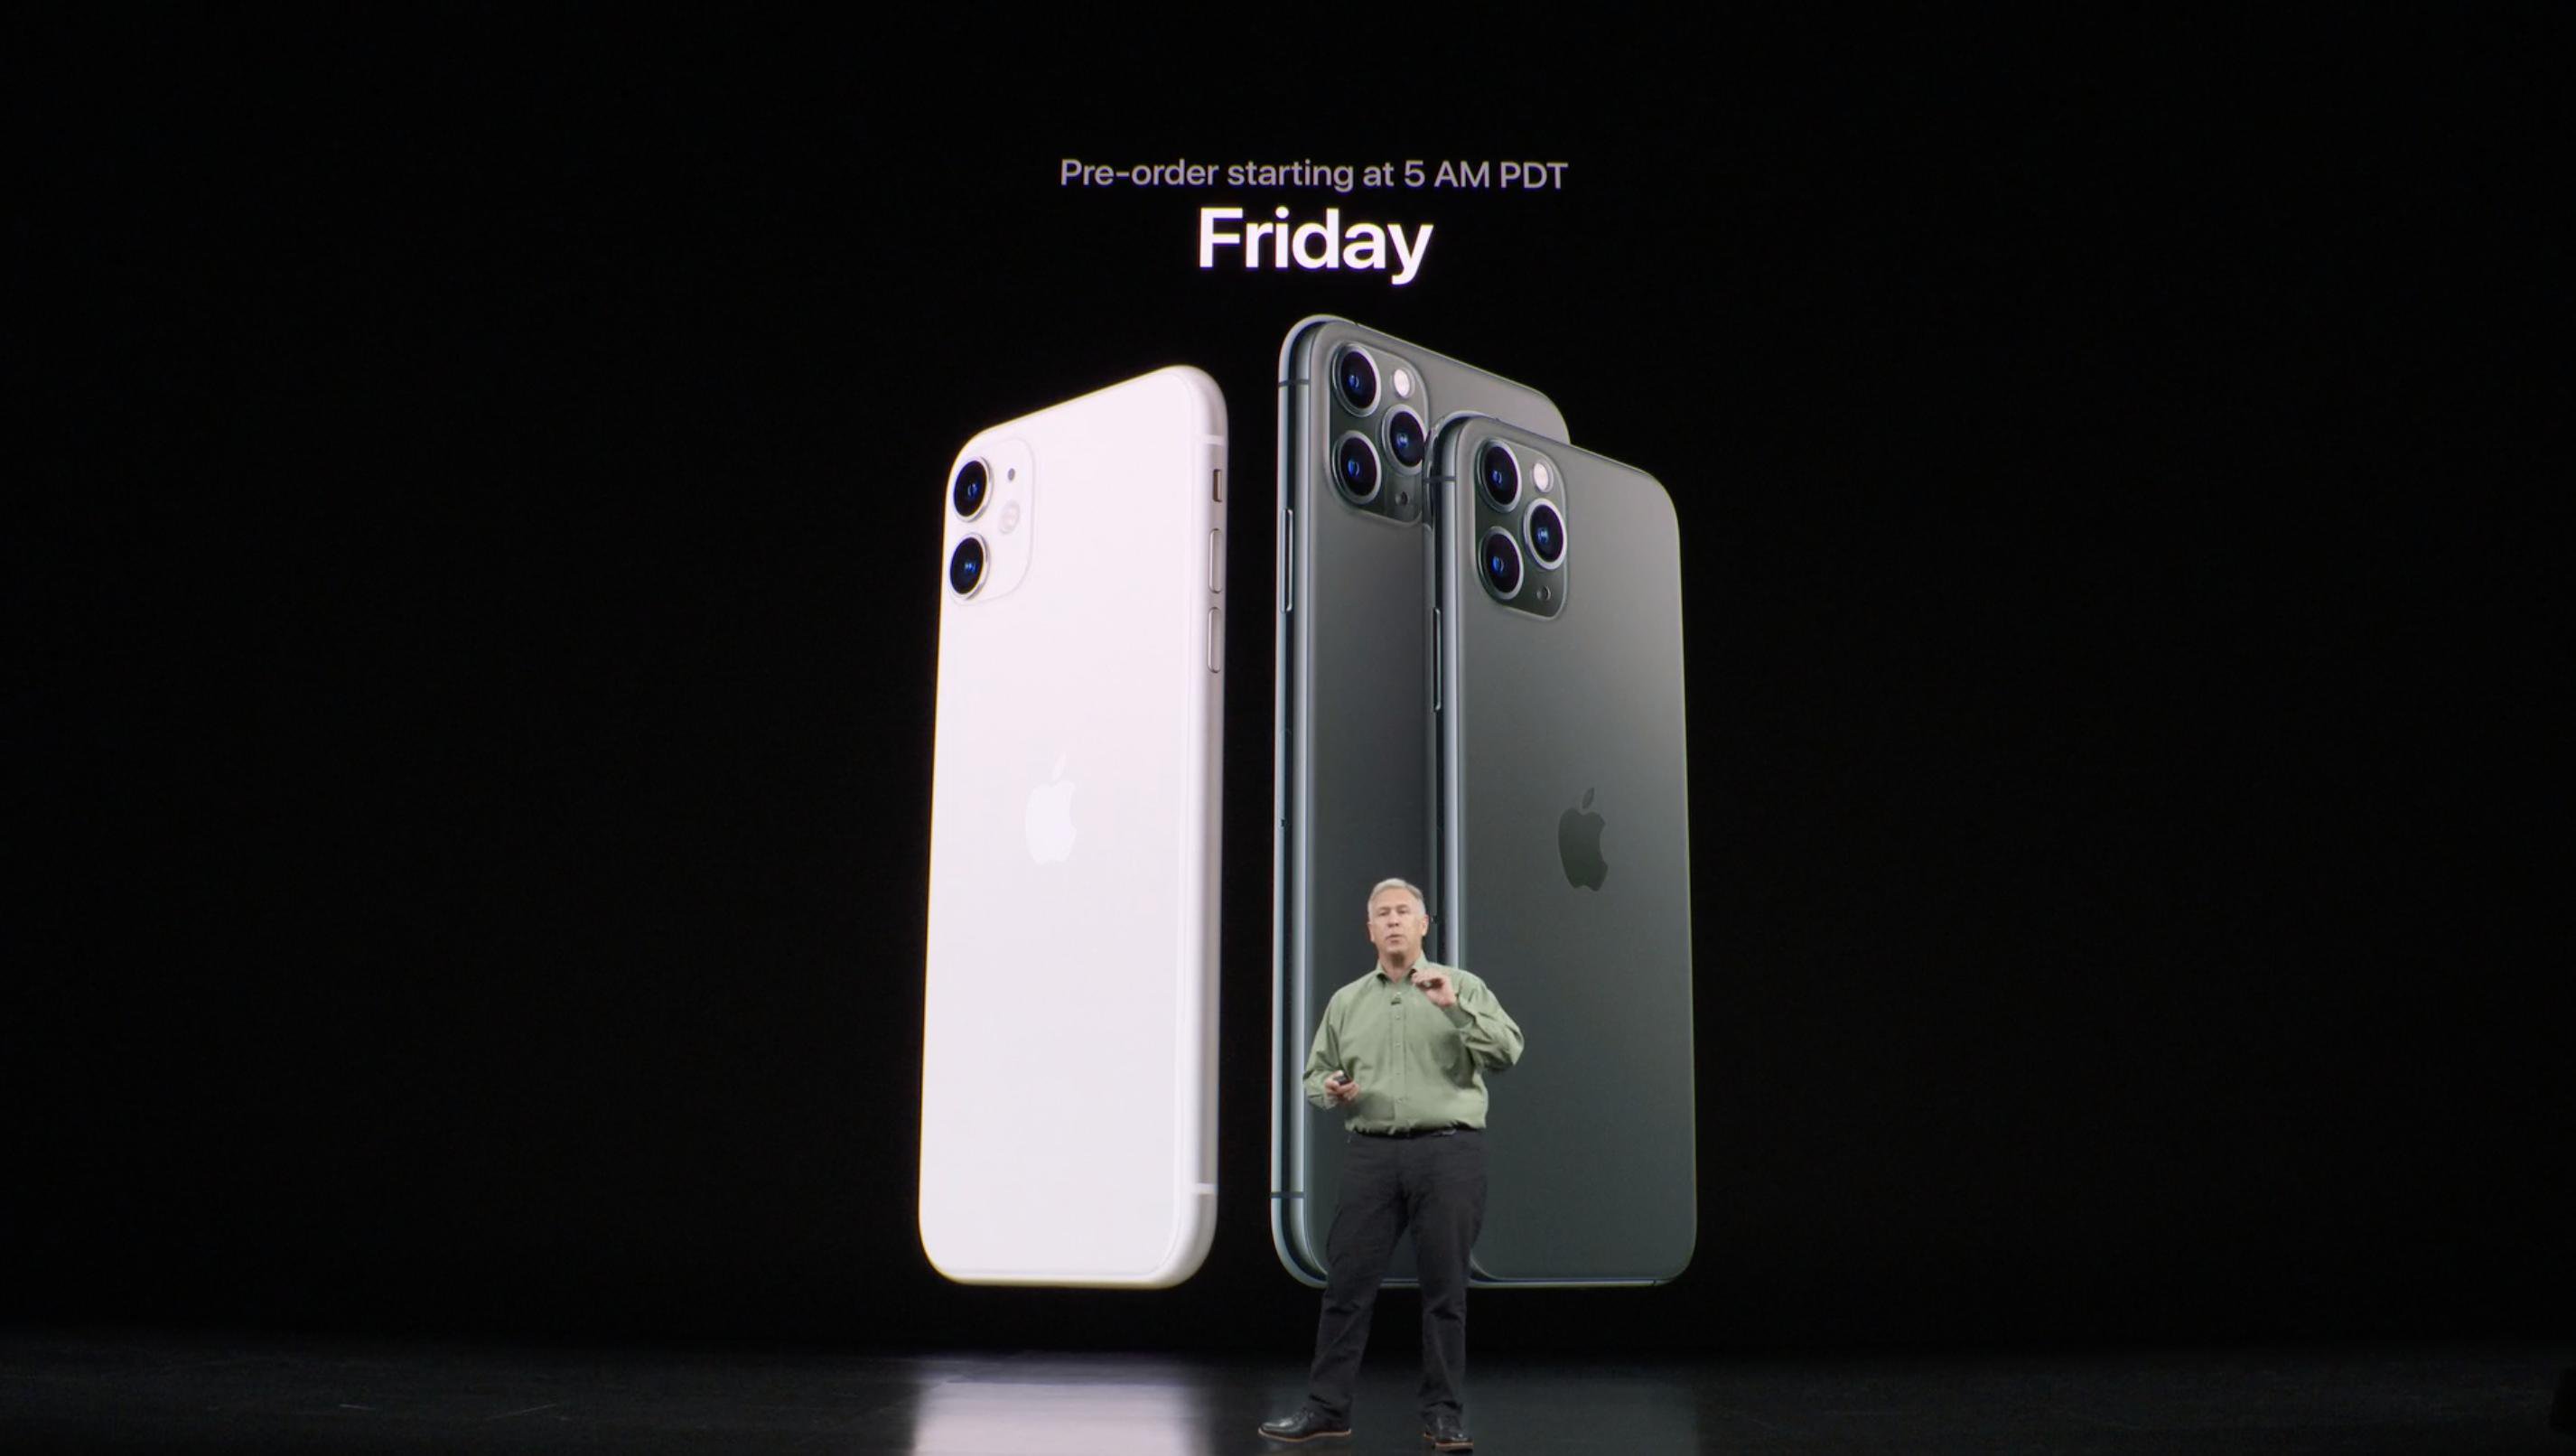 Keynote Septiembre 2019: Phil Schiller lanzamiento iPhone 11 y 11 Pro